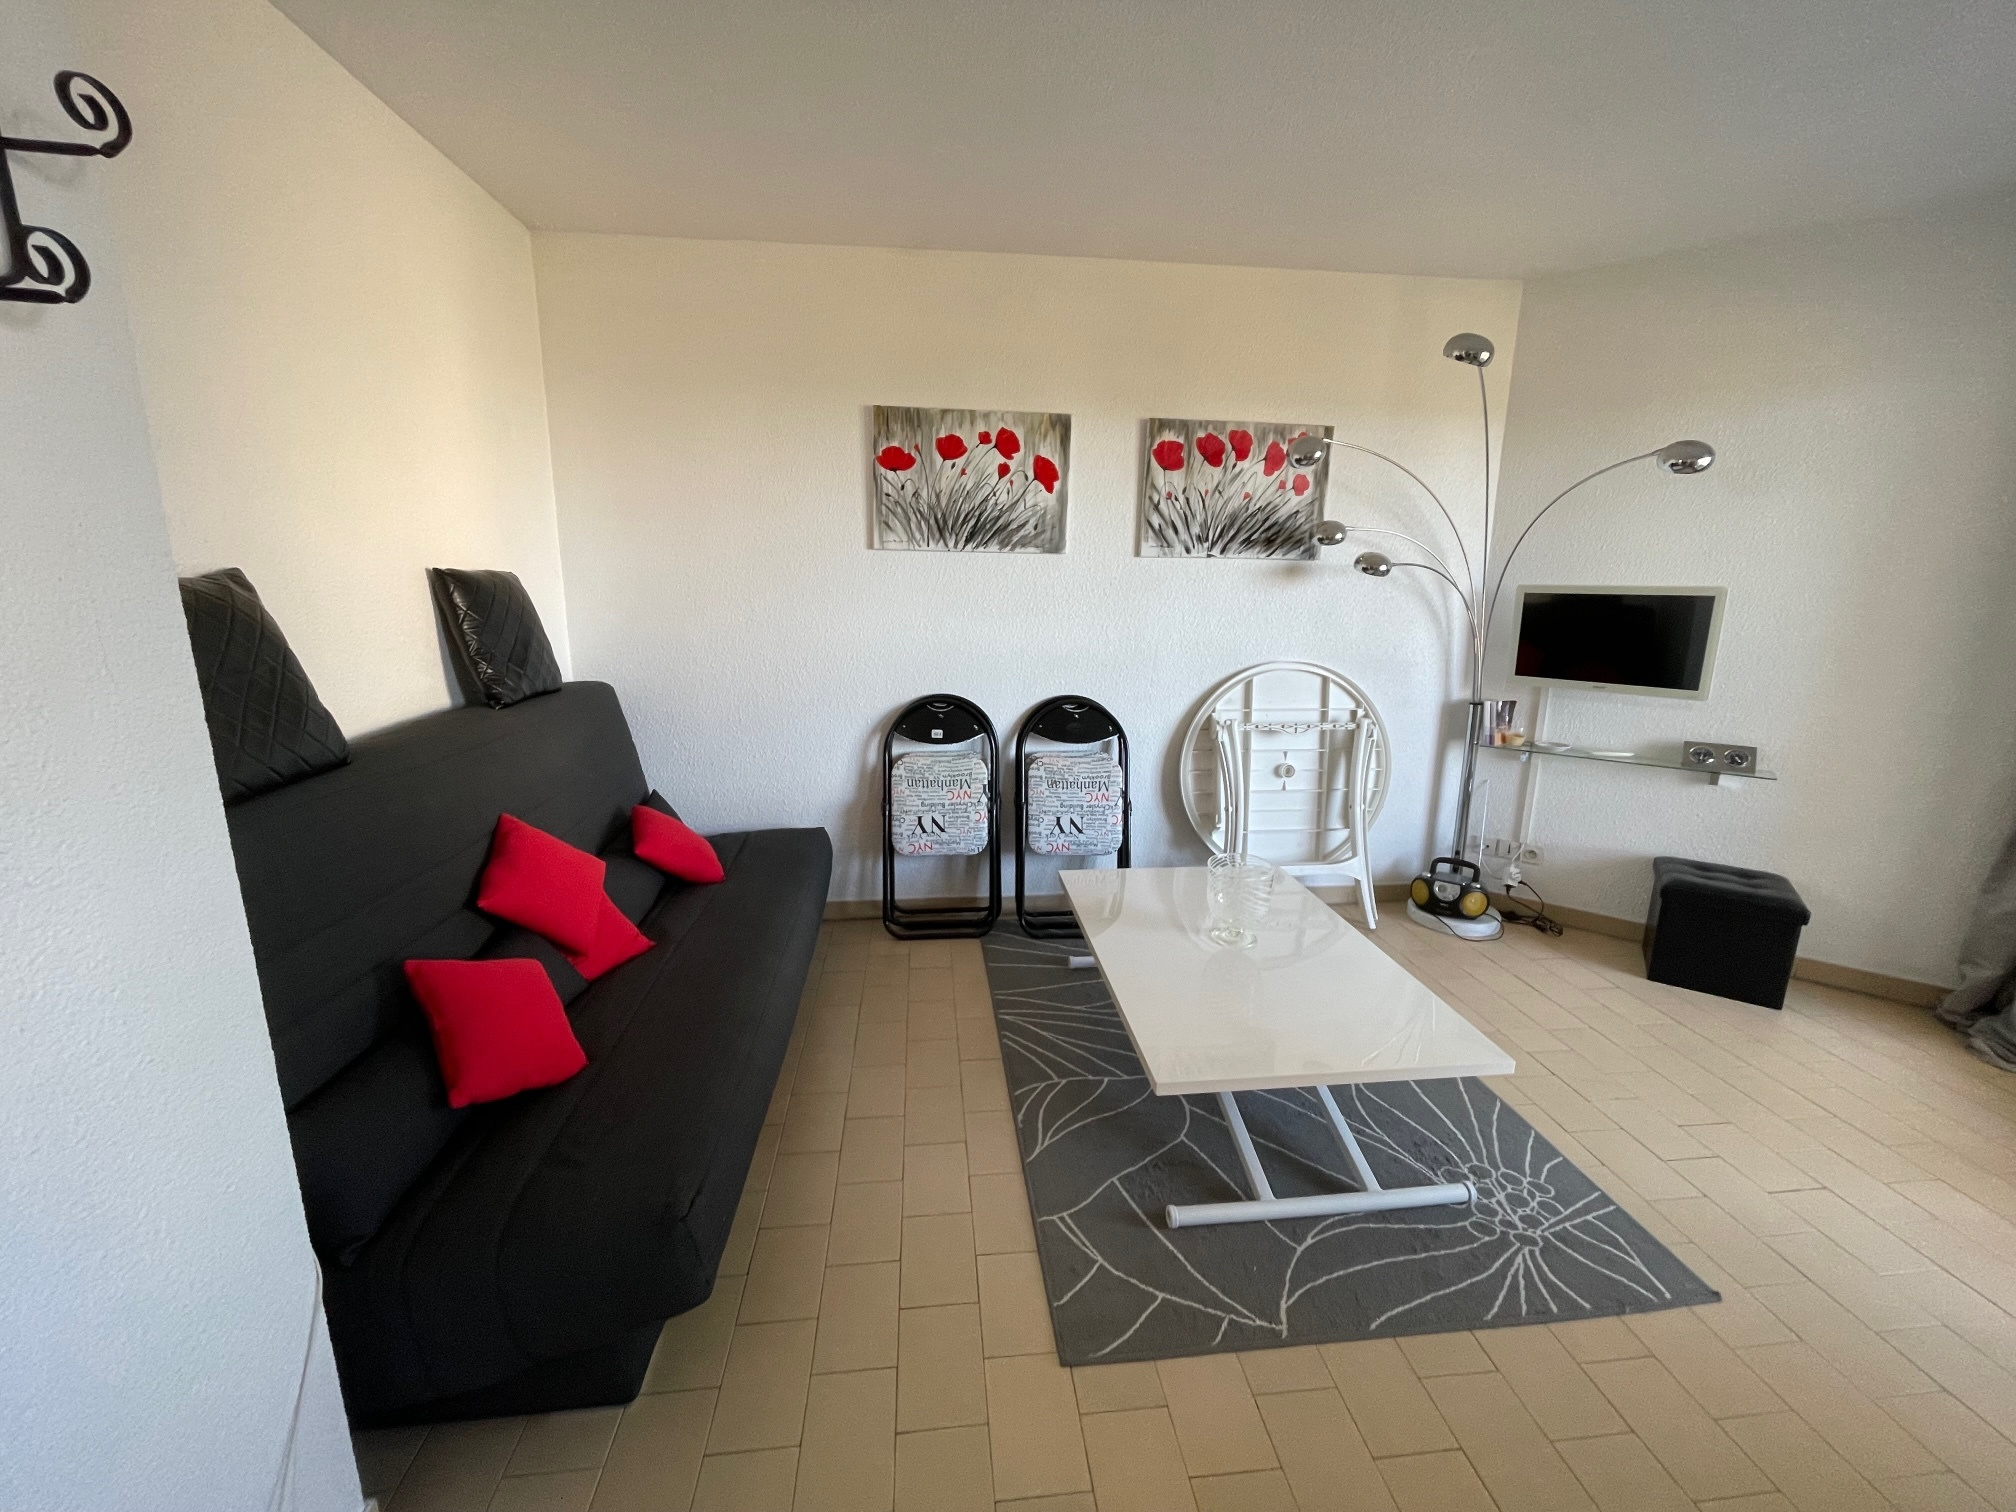 À vendre appartement de 30m2 à st cyprien plage (66750) - Photo 9'